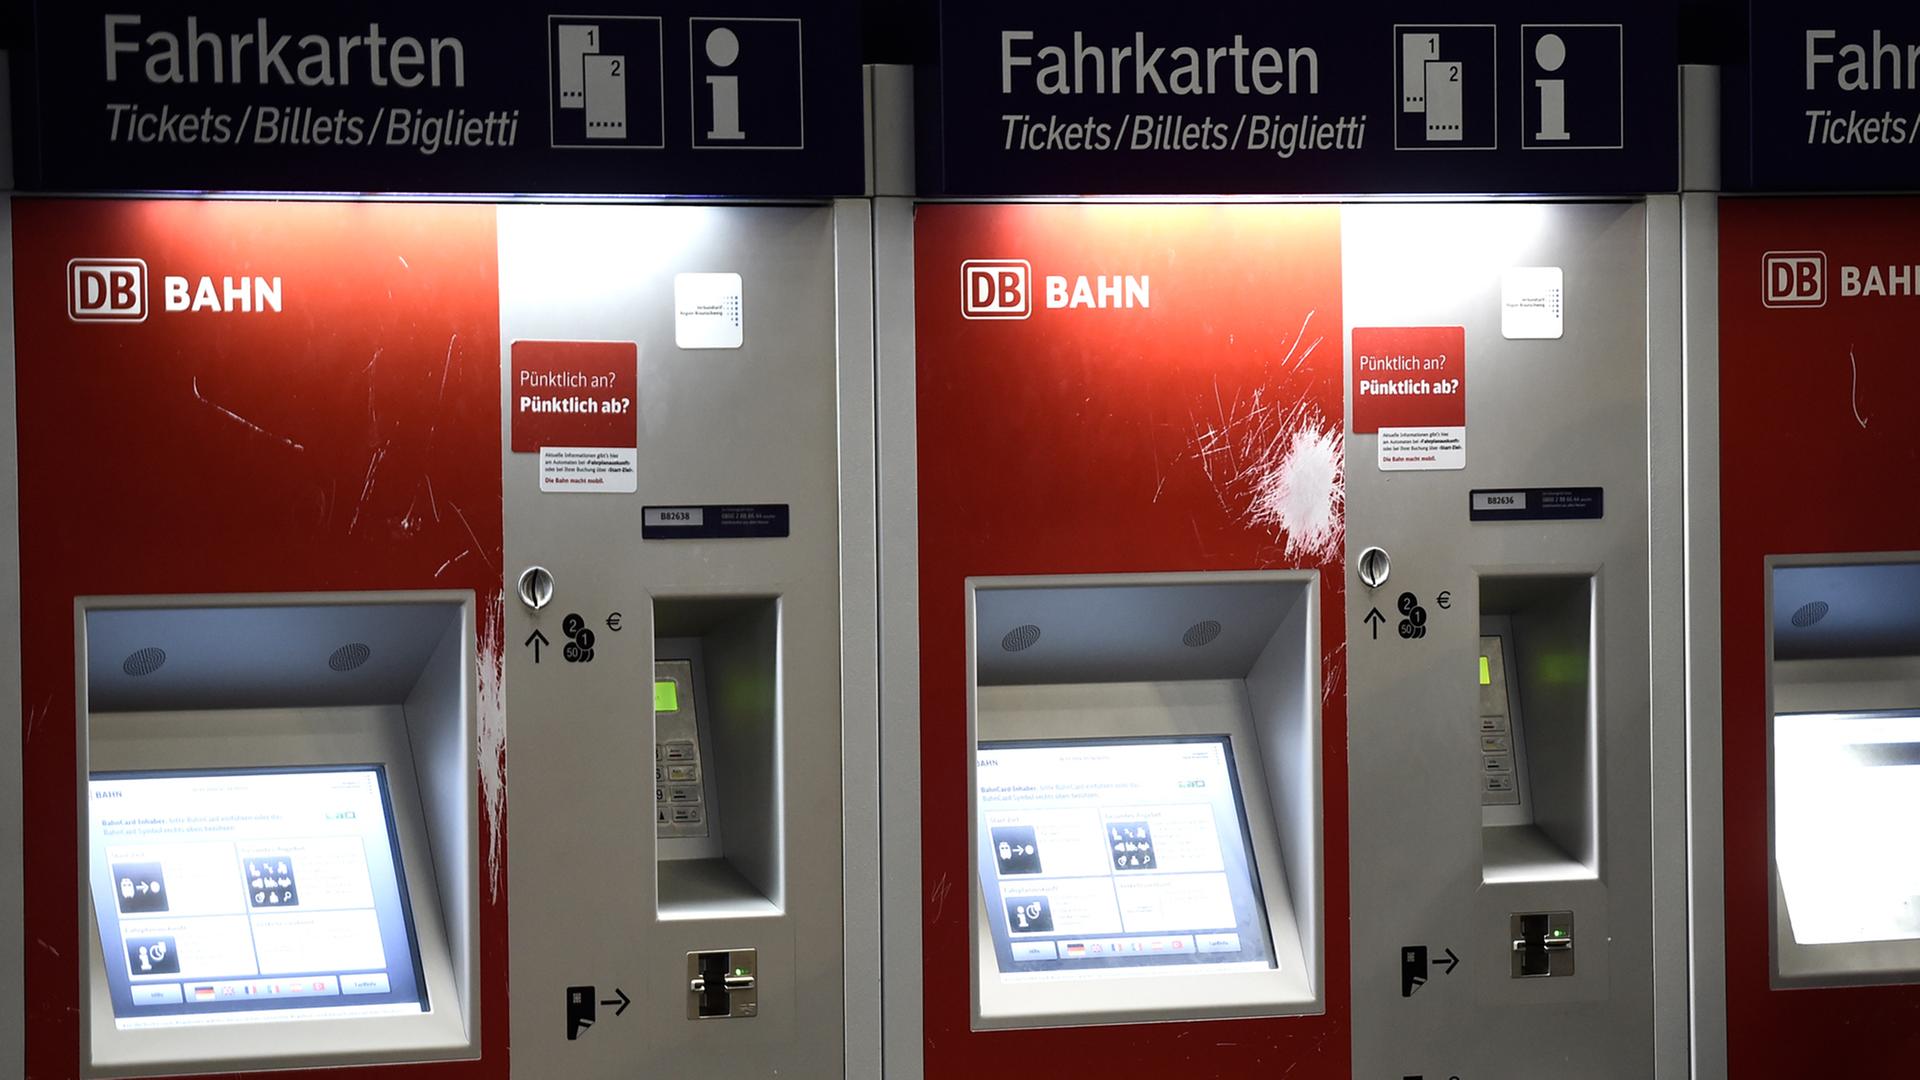 maximaliseren kennisgeving ziekte Fahrkartenautomaten der Bahn - Schutz mit Farbpatronen und DNA-Markierung |  deutschlandfunk.de